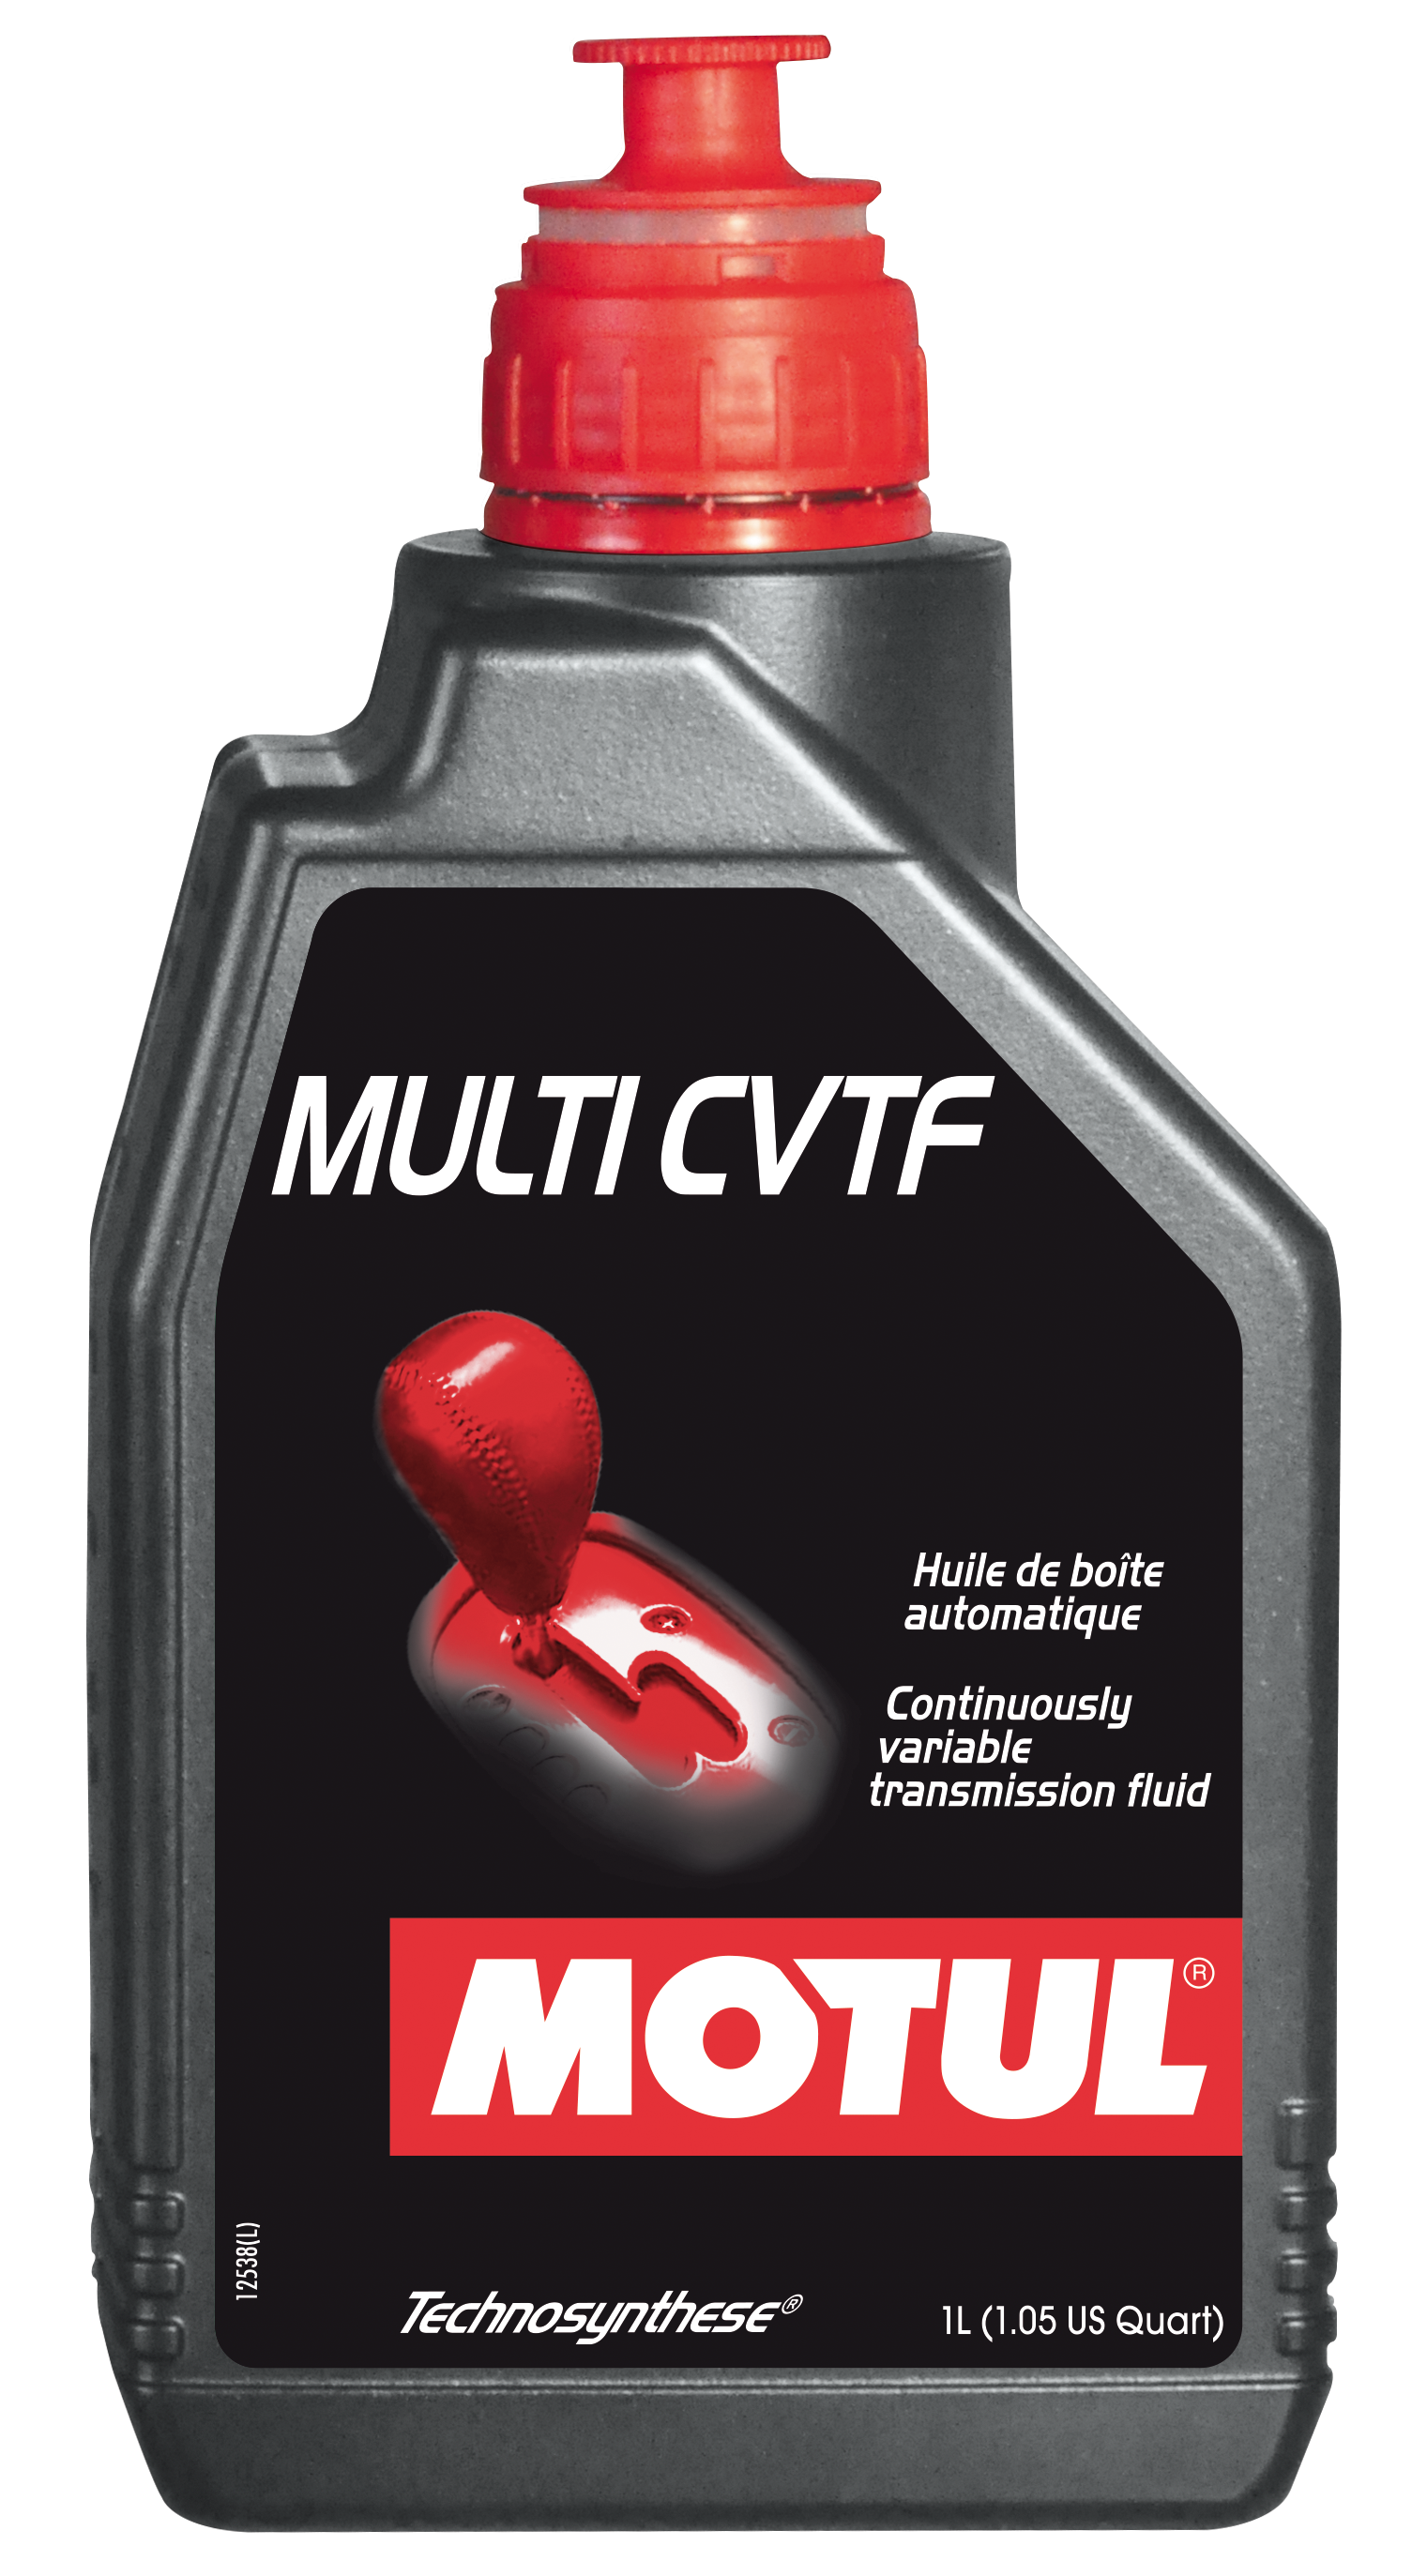 MOTUL MULTI CVTF - 1L - Technosynthese Transmission fluid